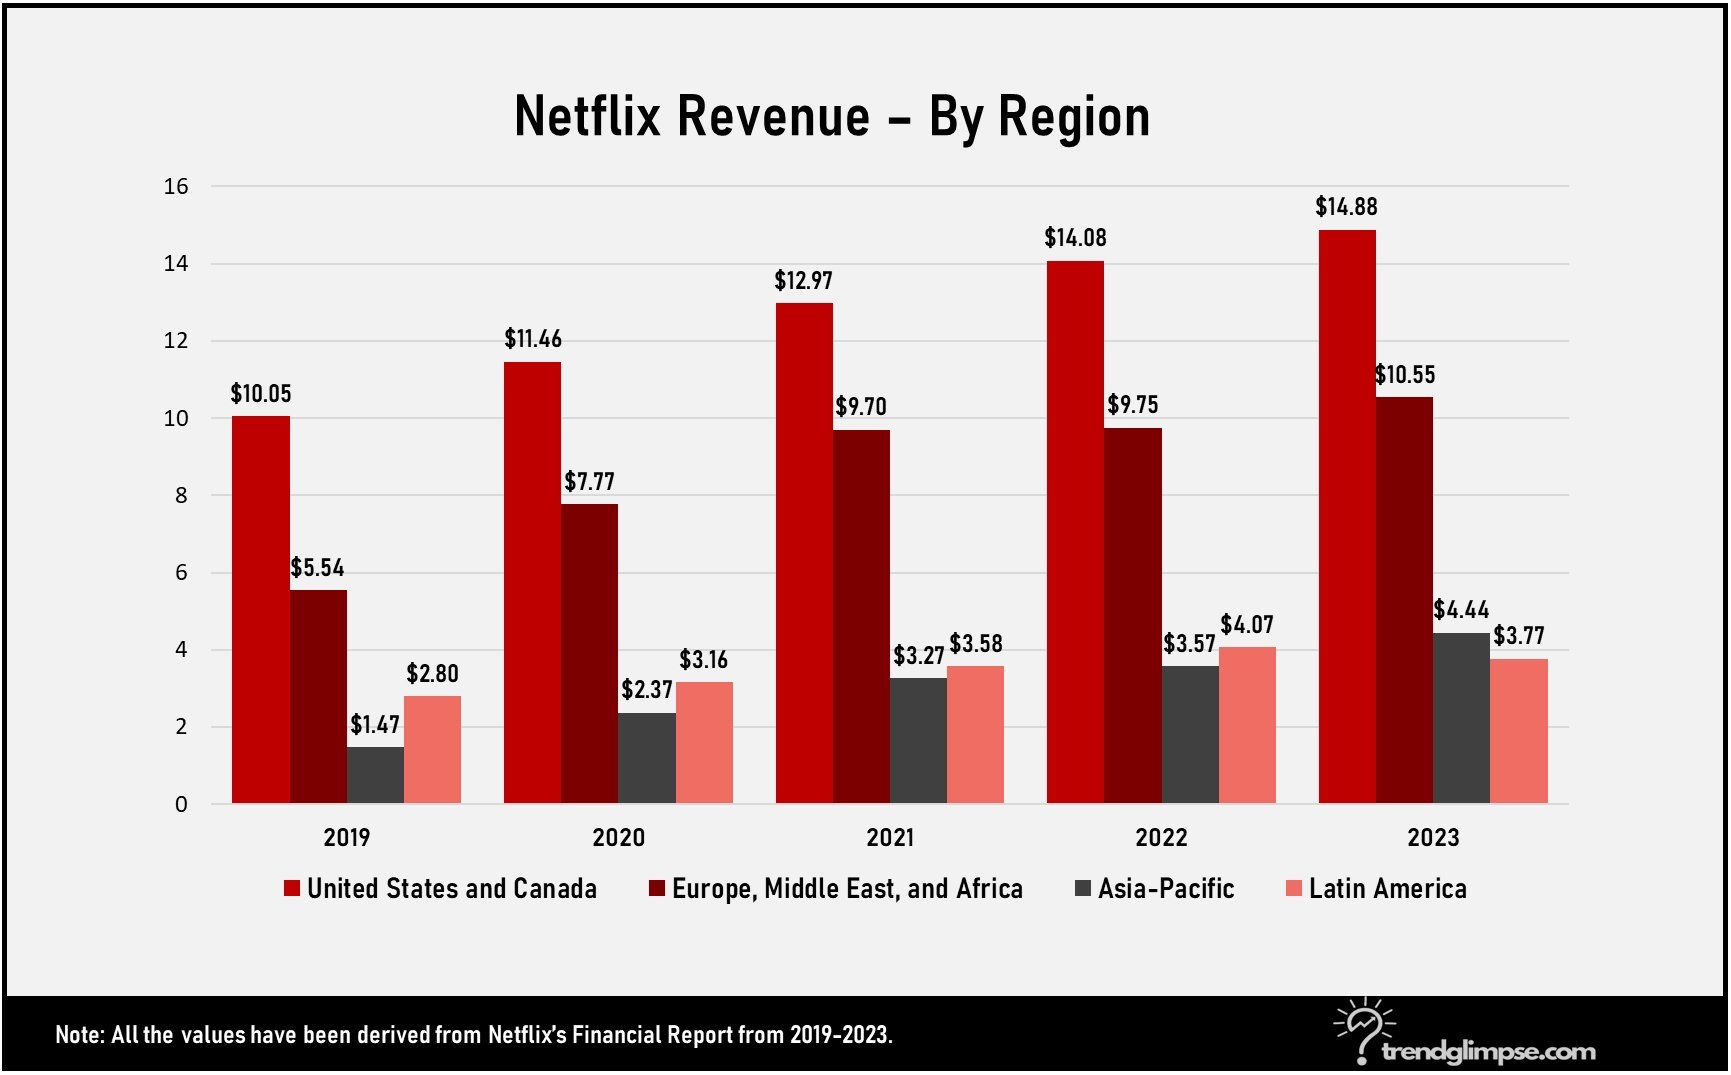 Netflix Growth by Region 2023